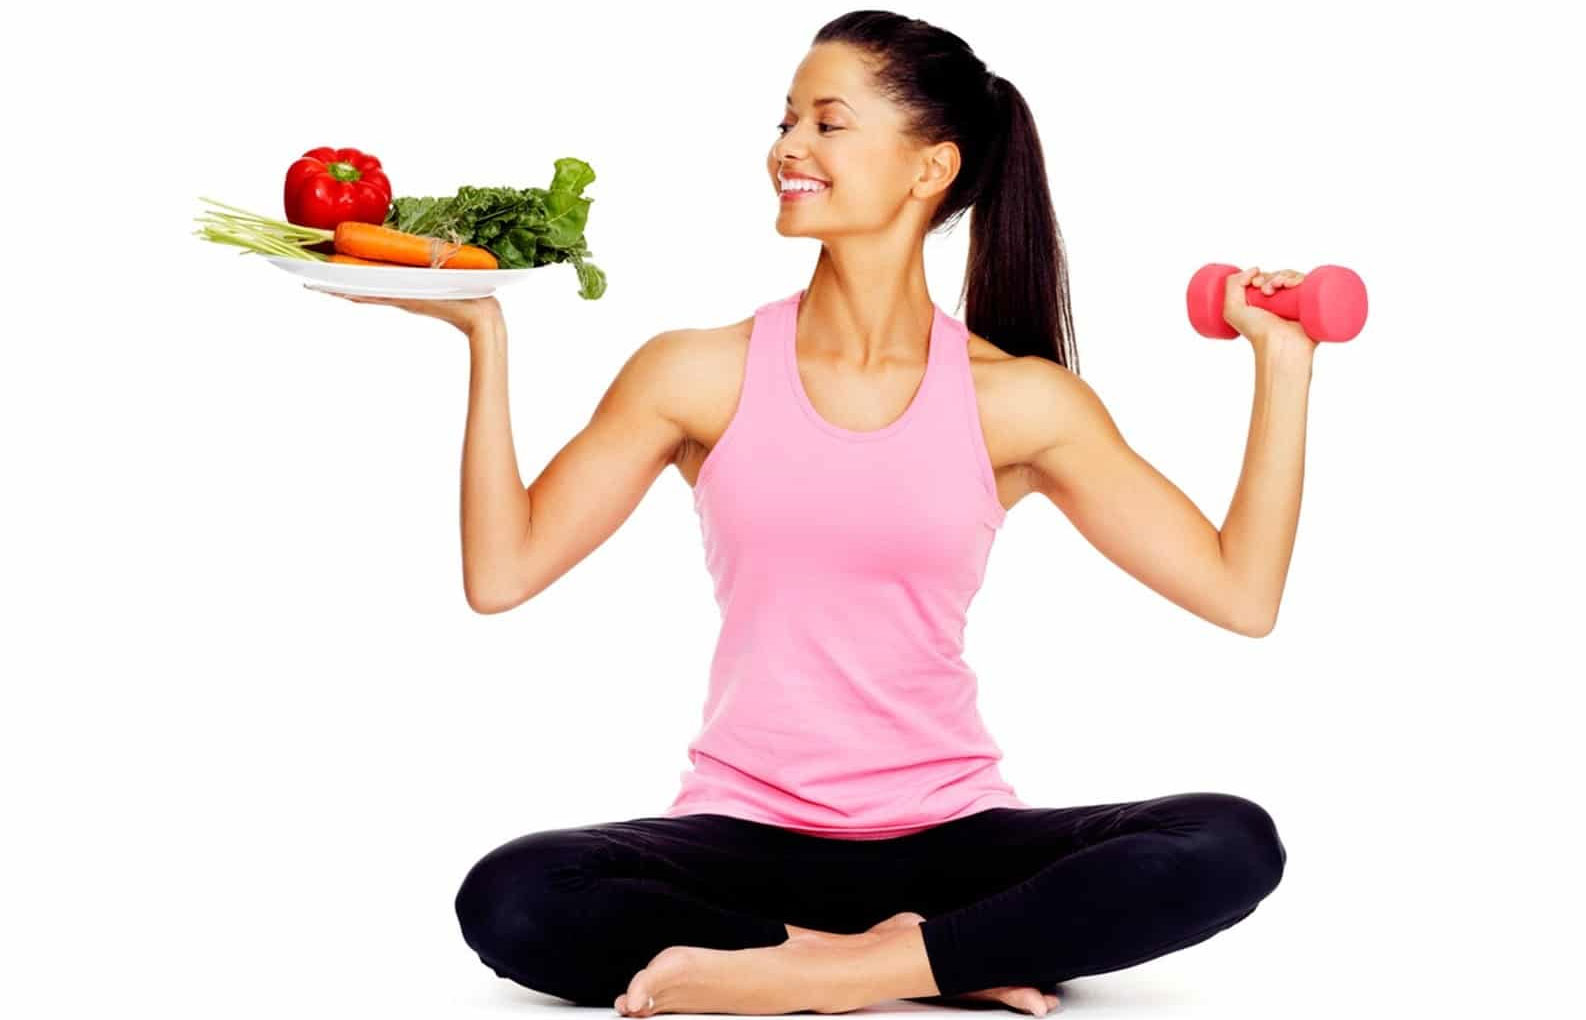 Kết ăn ý luyện tập và ăn kiêng cữ nhằm đạt hiệu suất cao tách cân nặng chất lượng nhất